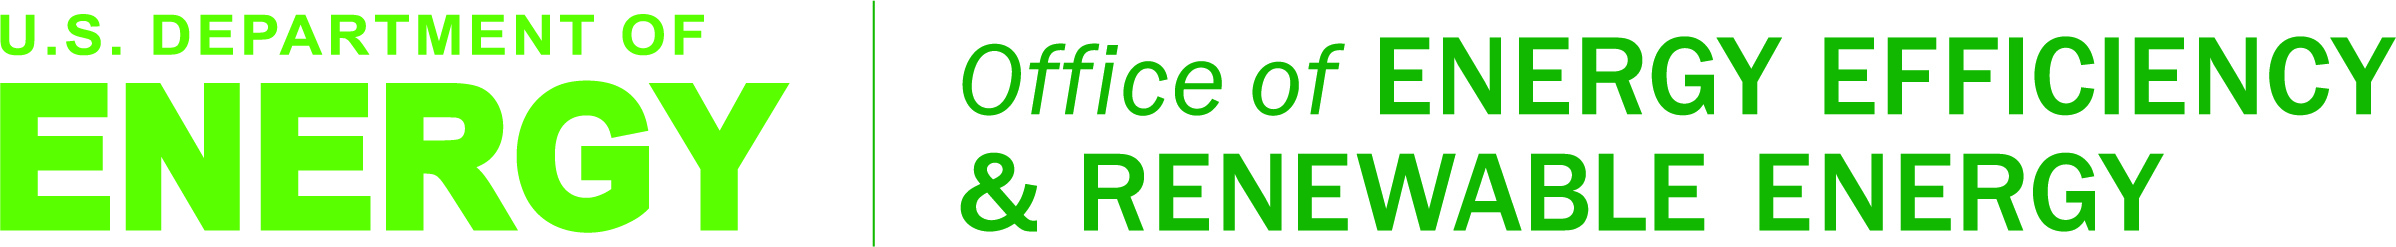 DOE Office of Energy Efficiency & Renewable Energy